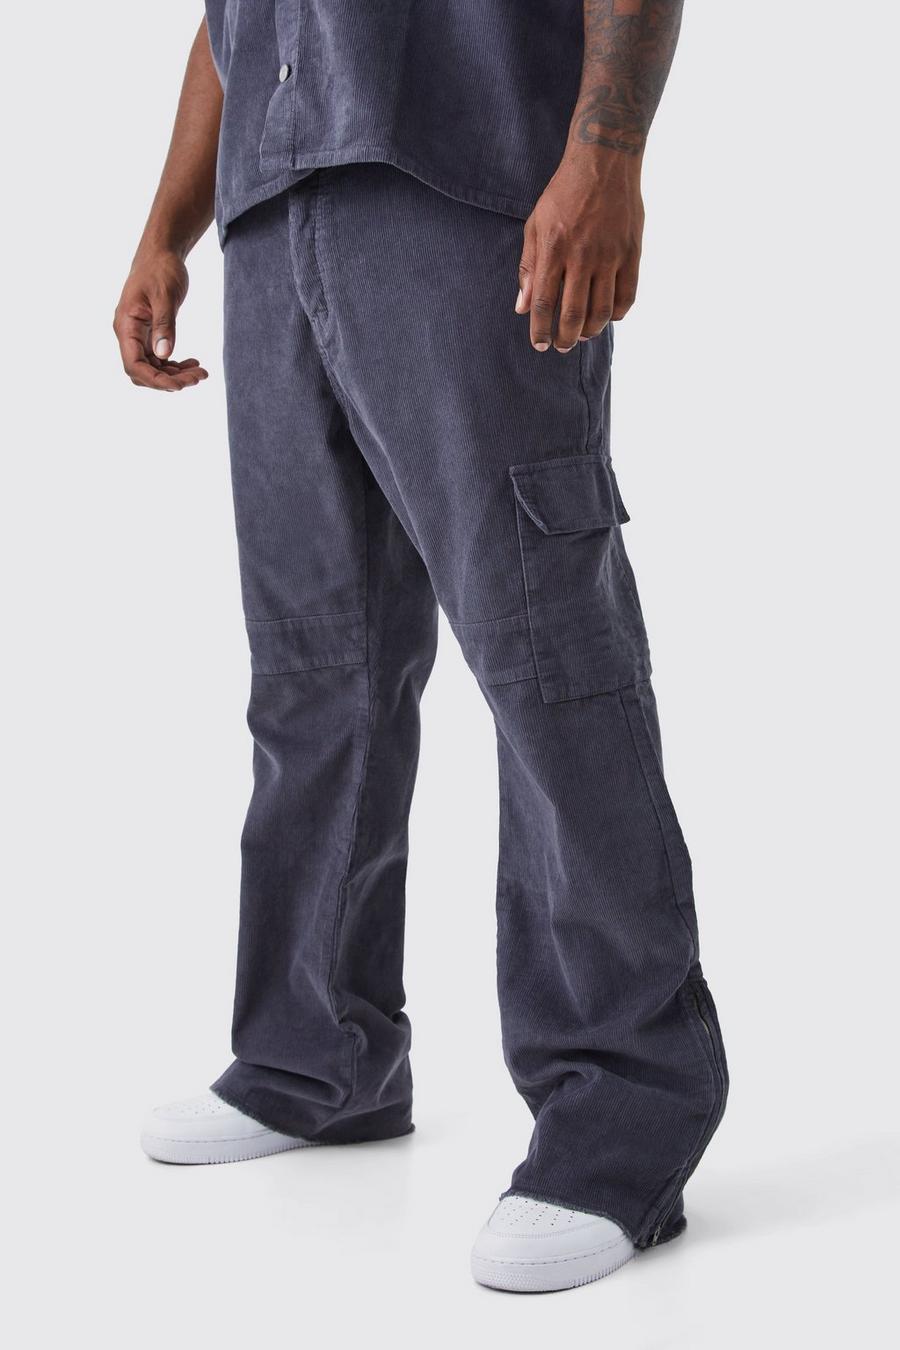 Pantalón Plus cargo ajustado de campana con cremallera, refuerzo de pana y cintura fija, Charcoal